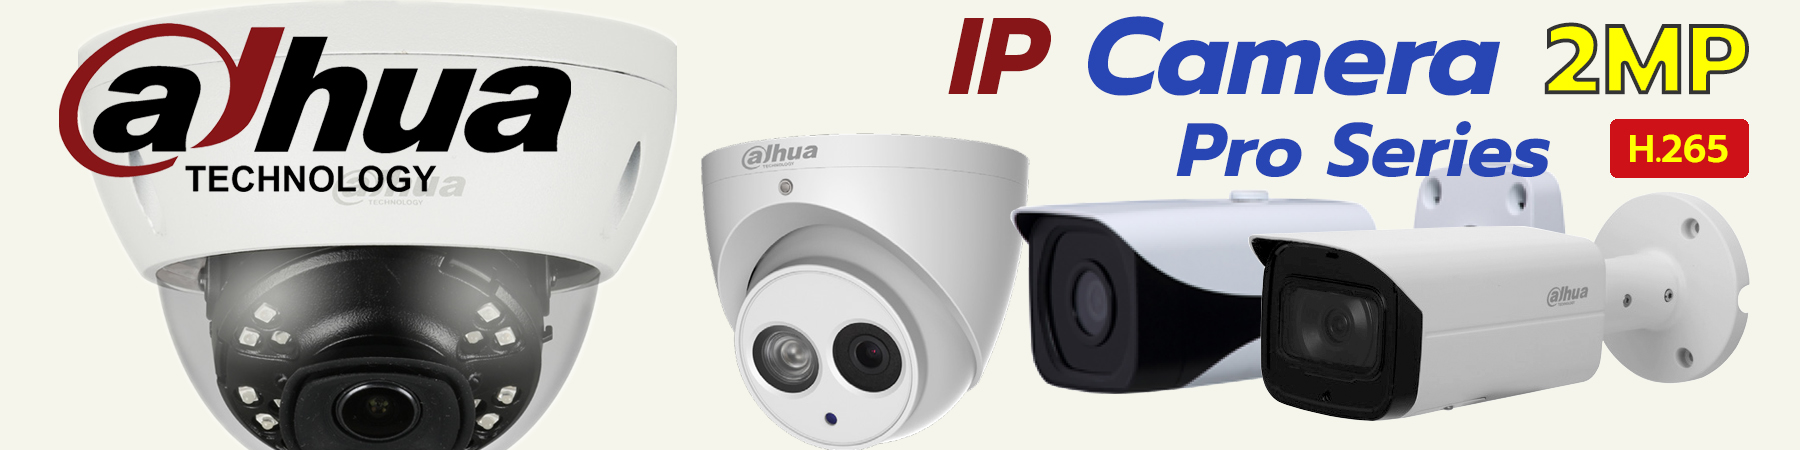 Dahua IP Camera Pro Series,Dahua Pro Series,Dahua IPC,Dahua IPC Pro Series 2MP,Dahua IPC Star Light,Dahua Built-in Mic,Dahua Network Camera